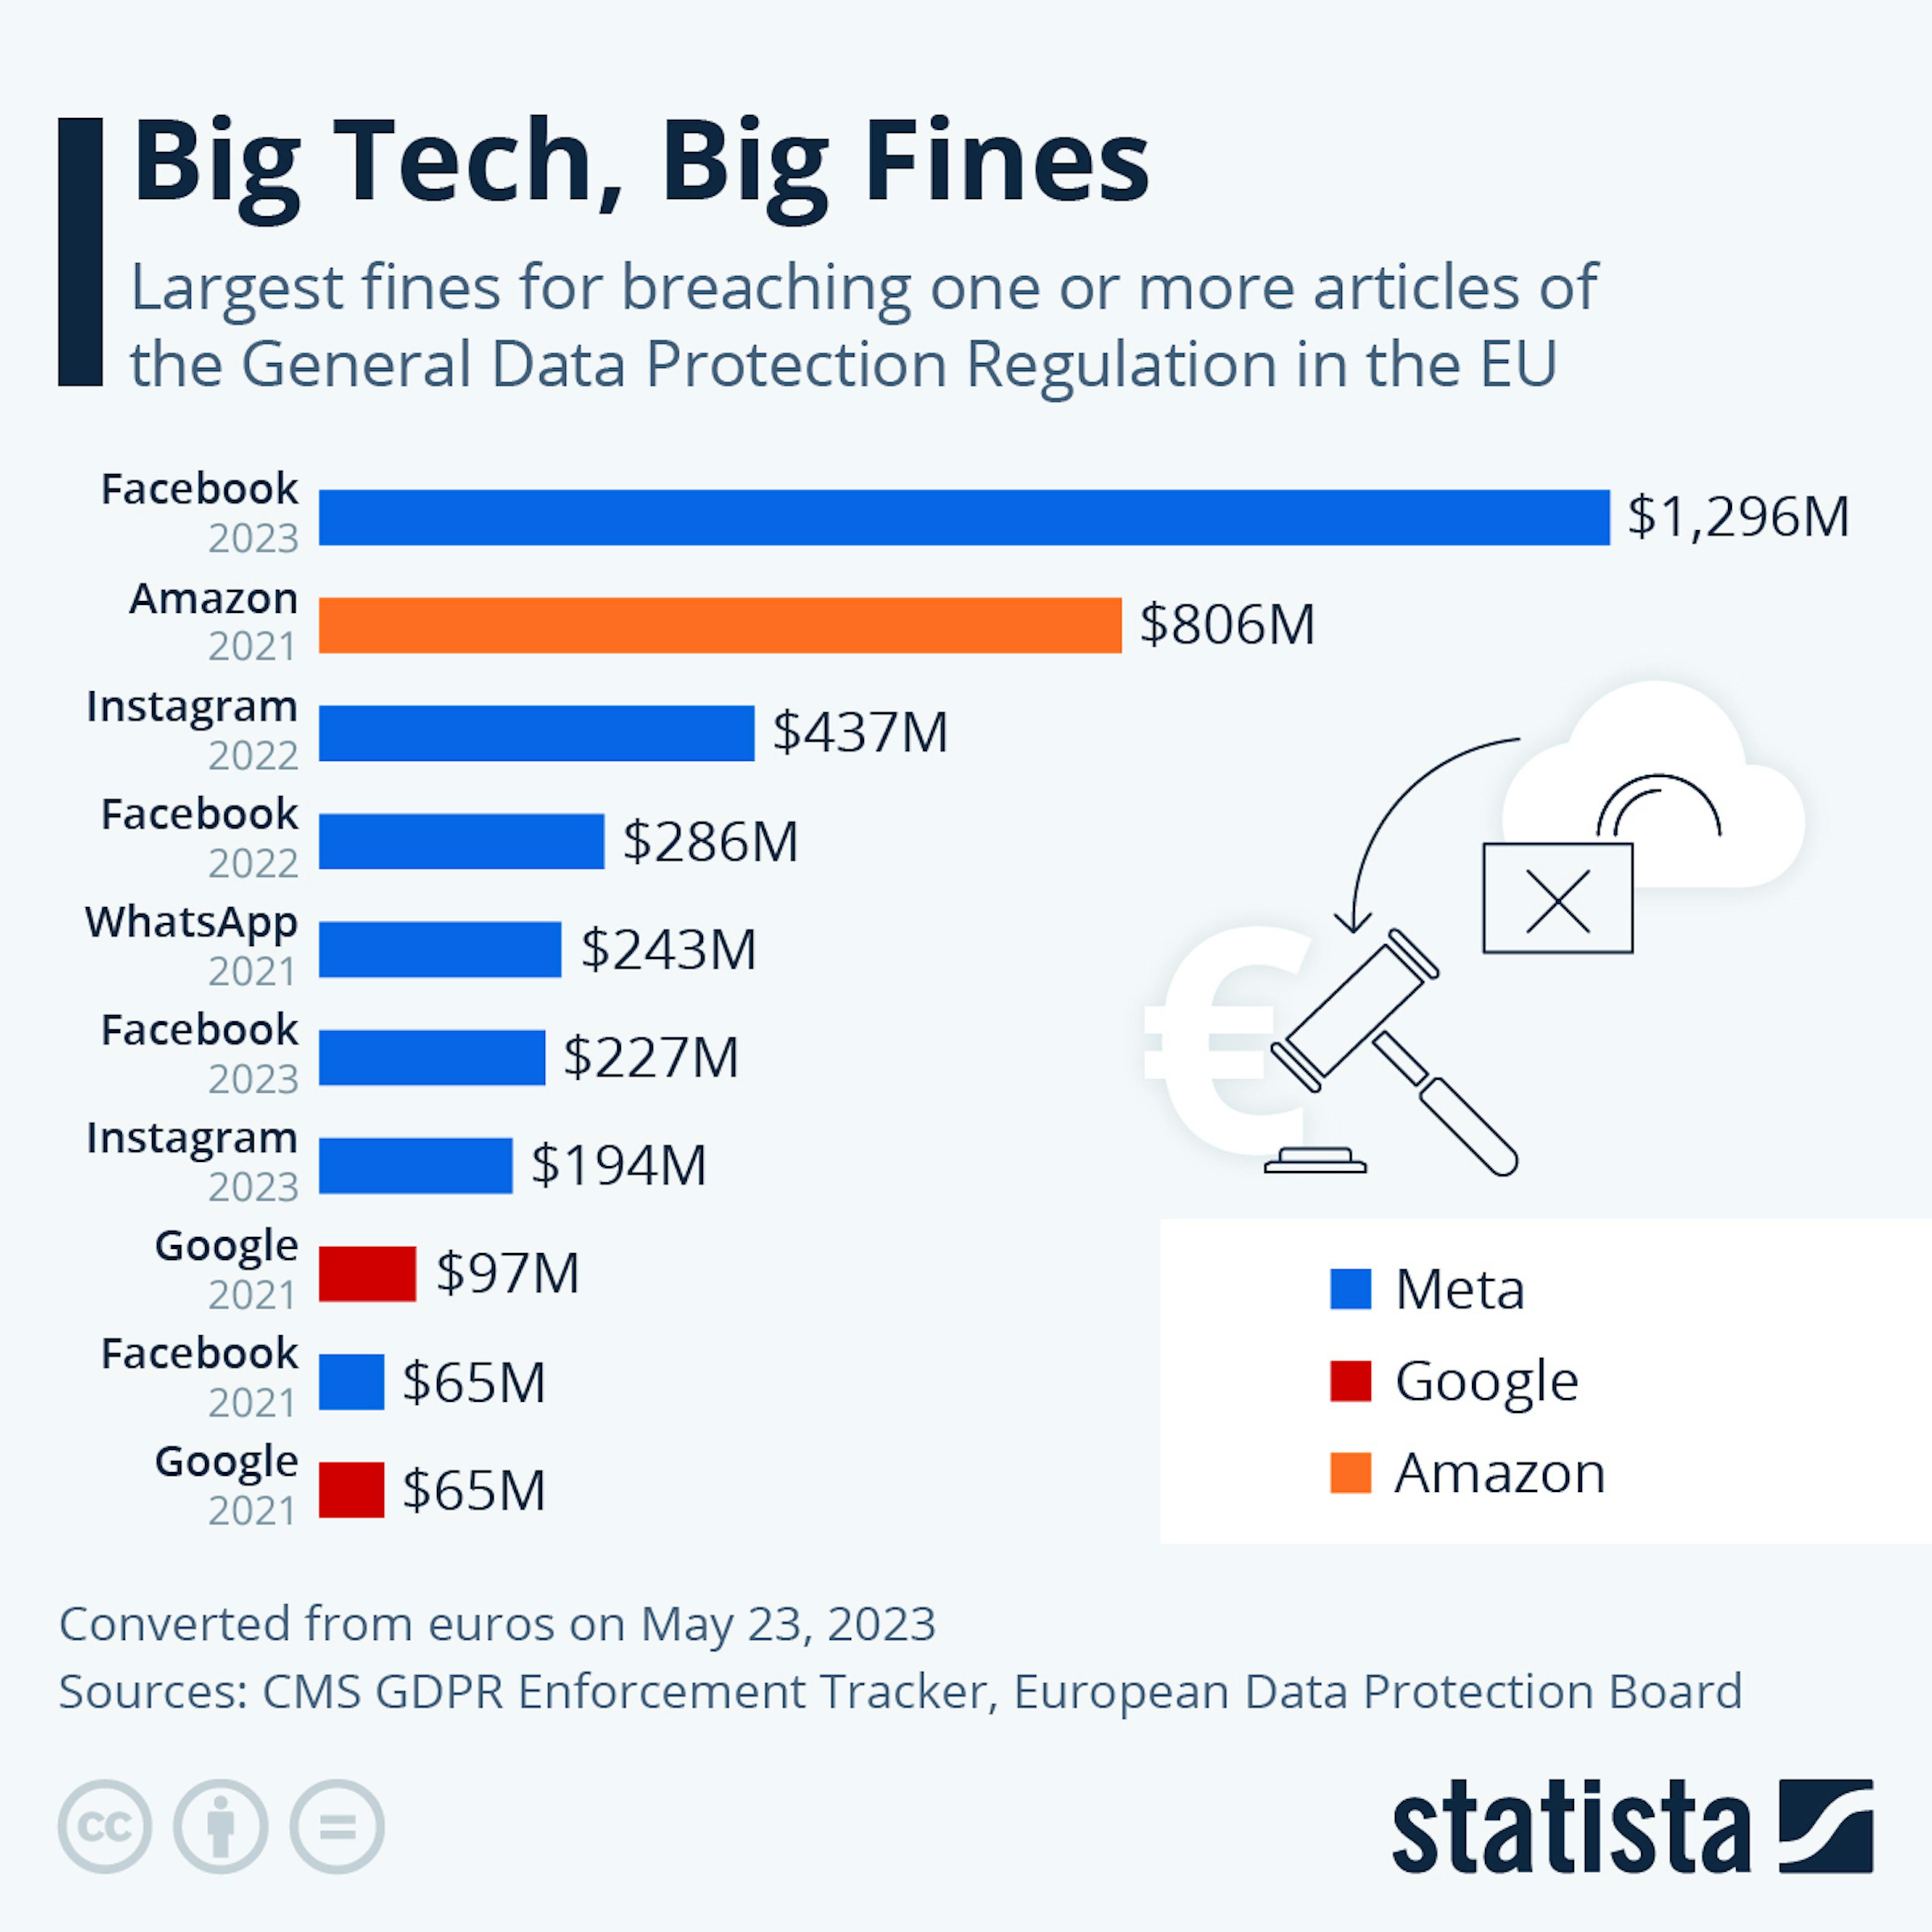 Big tech, big fines